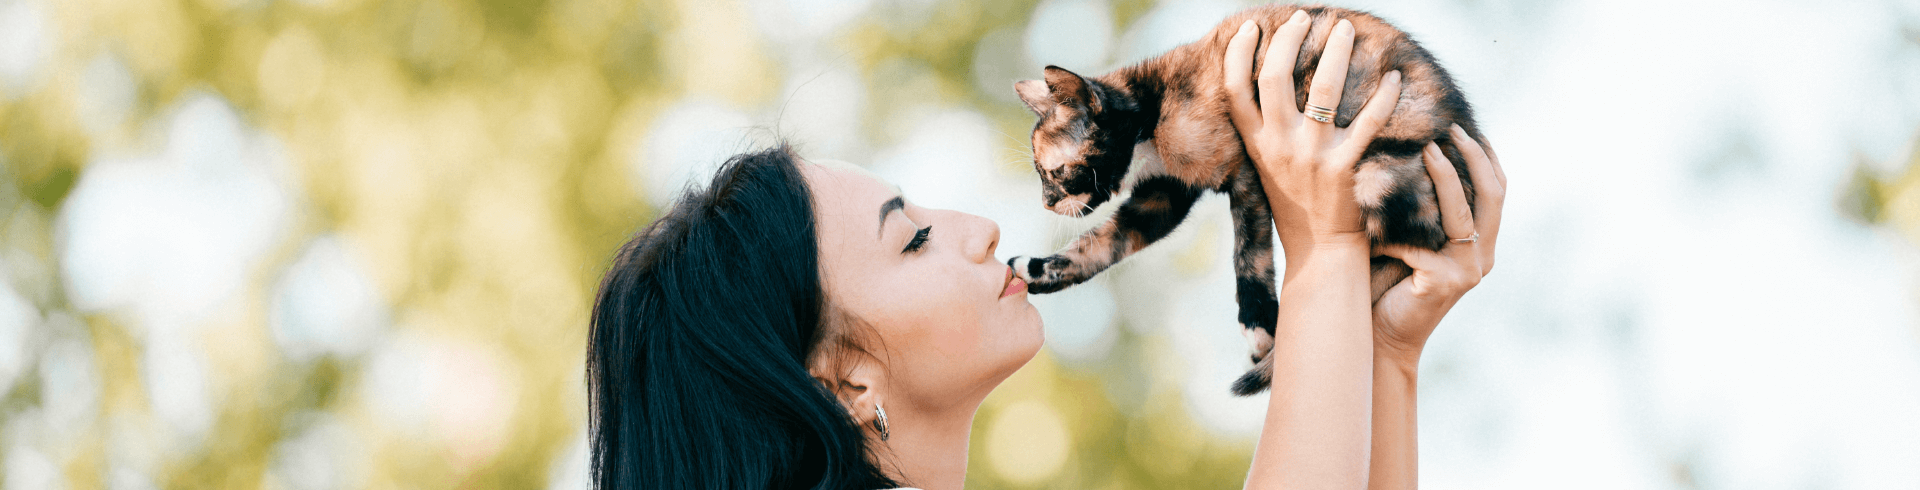 6 cosas que debes saber antes de adoptar un gato